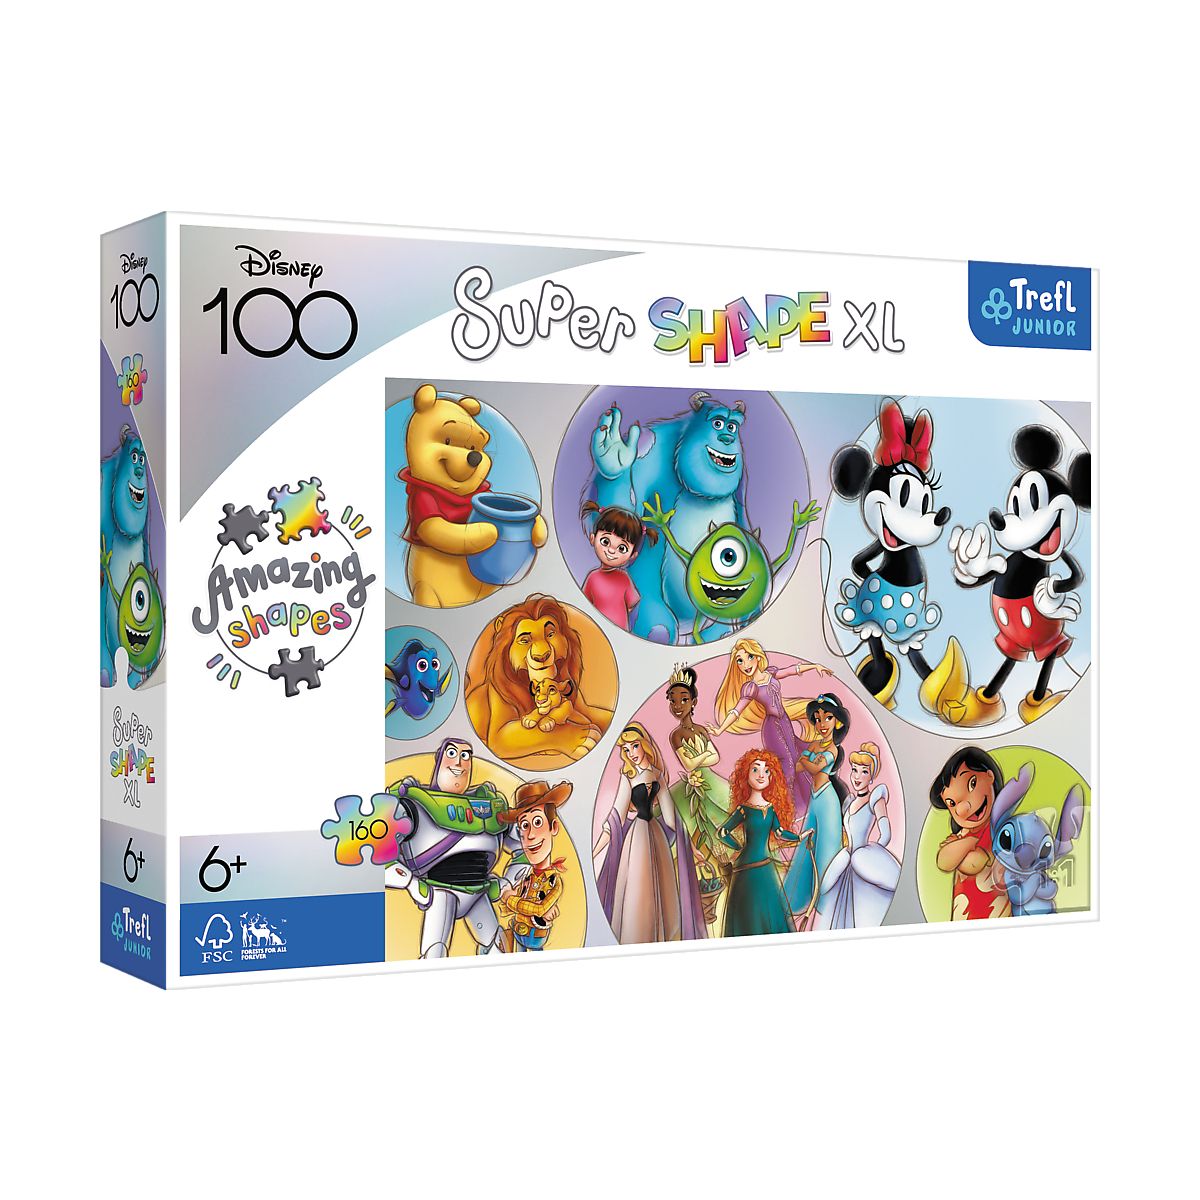 Puzzle Trefl Disney XL Kolorowy świat 160 el. (50033)